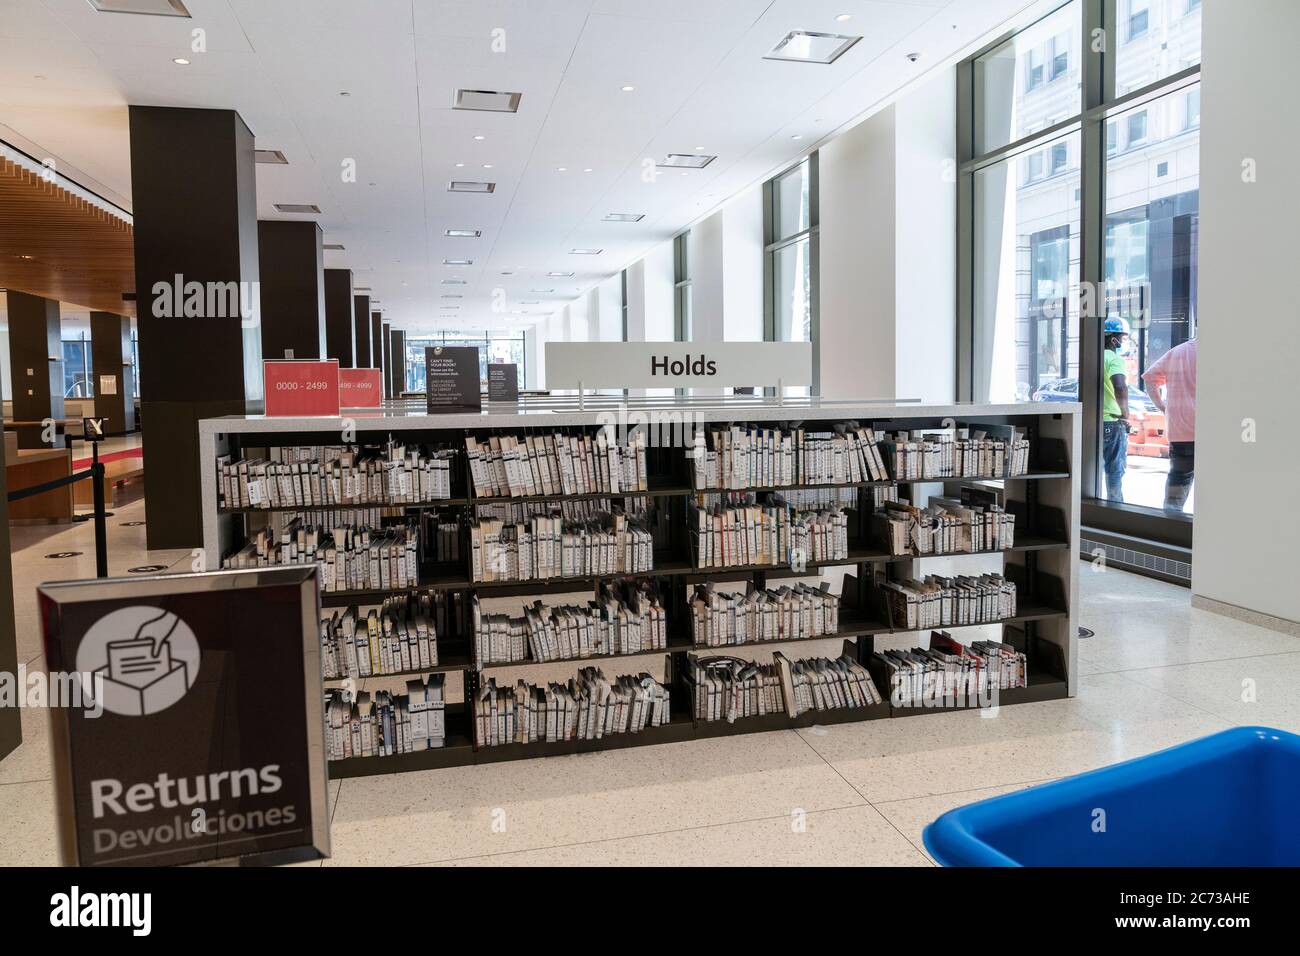 New York, NY - 13 juillet 2020: Intérieur de la bibliothèque de la Fondation Stavros Niarchos vu le 1er jour de l'ouverture après la fermeture de toutes les bibliothèques en raison de la pandémie de COVID-19 Banque D'Images